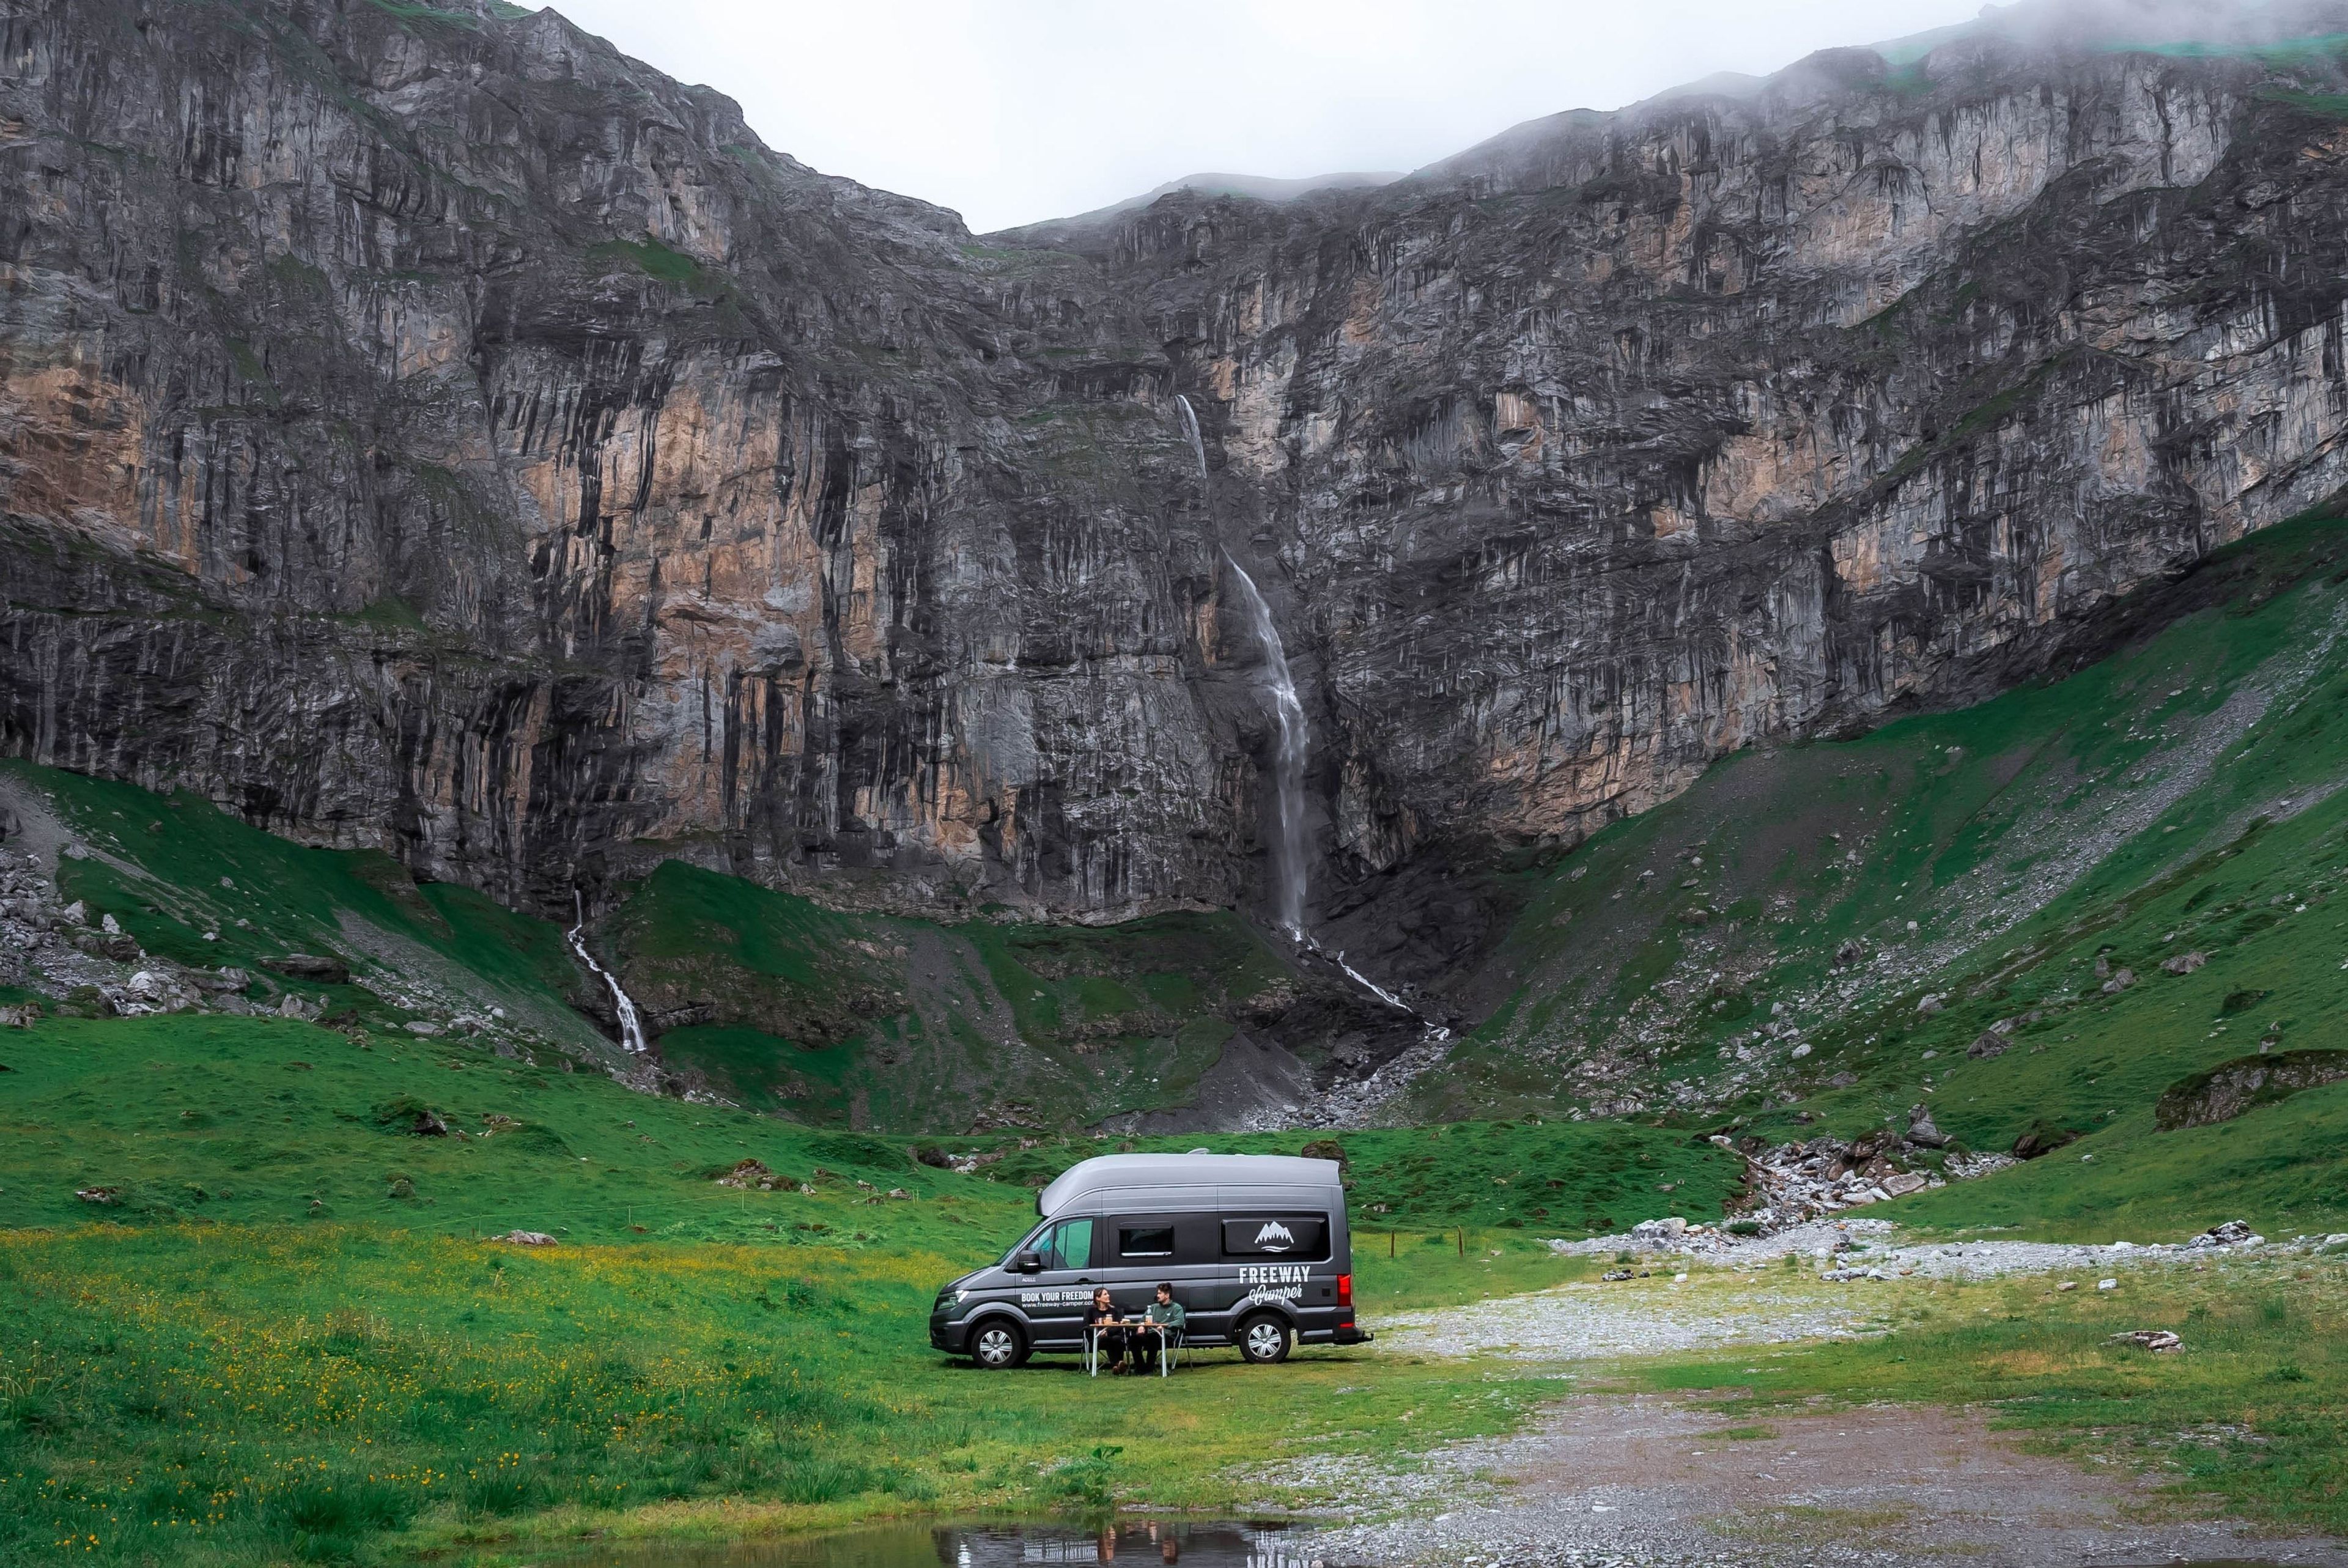 Una coppia davanti al camper parcheggiato davanti ad una cascata tra le montagne.